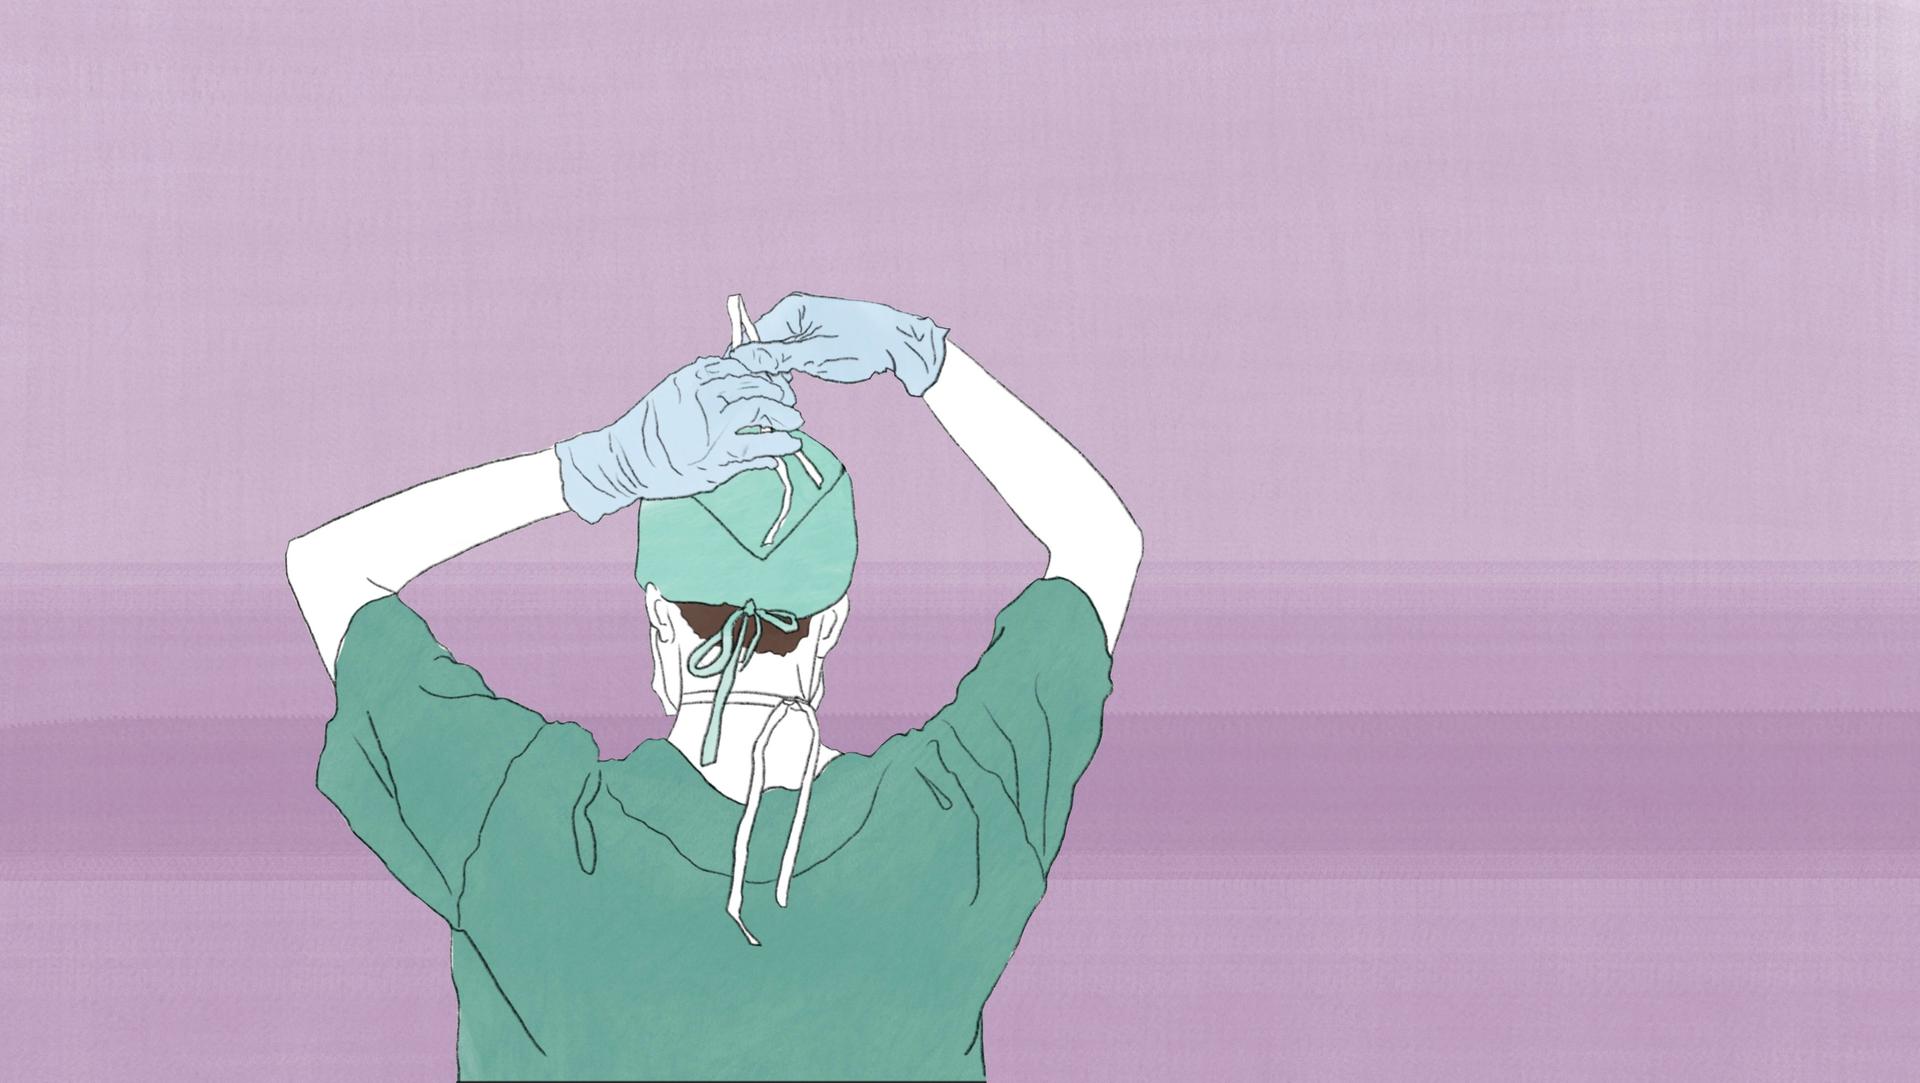 Die Illustration zeigt einen Chirurgen, der sich auf eine Operation vorbereitet.